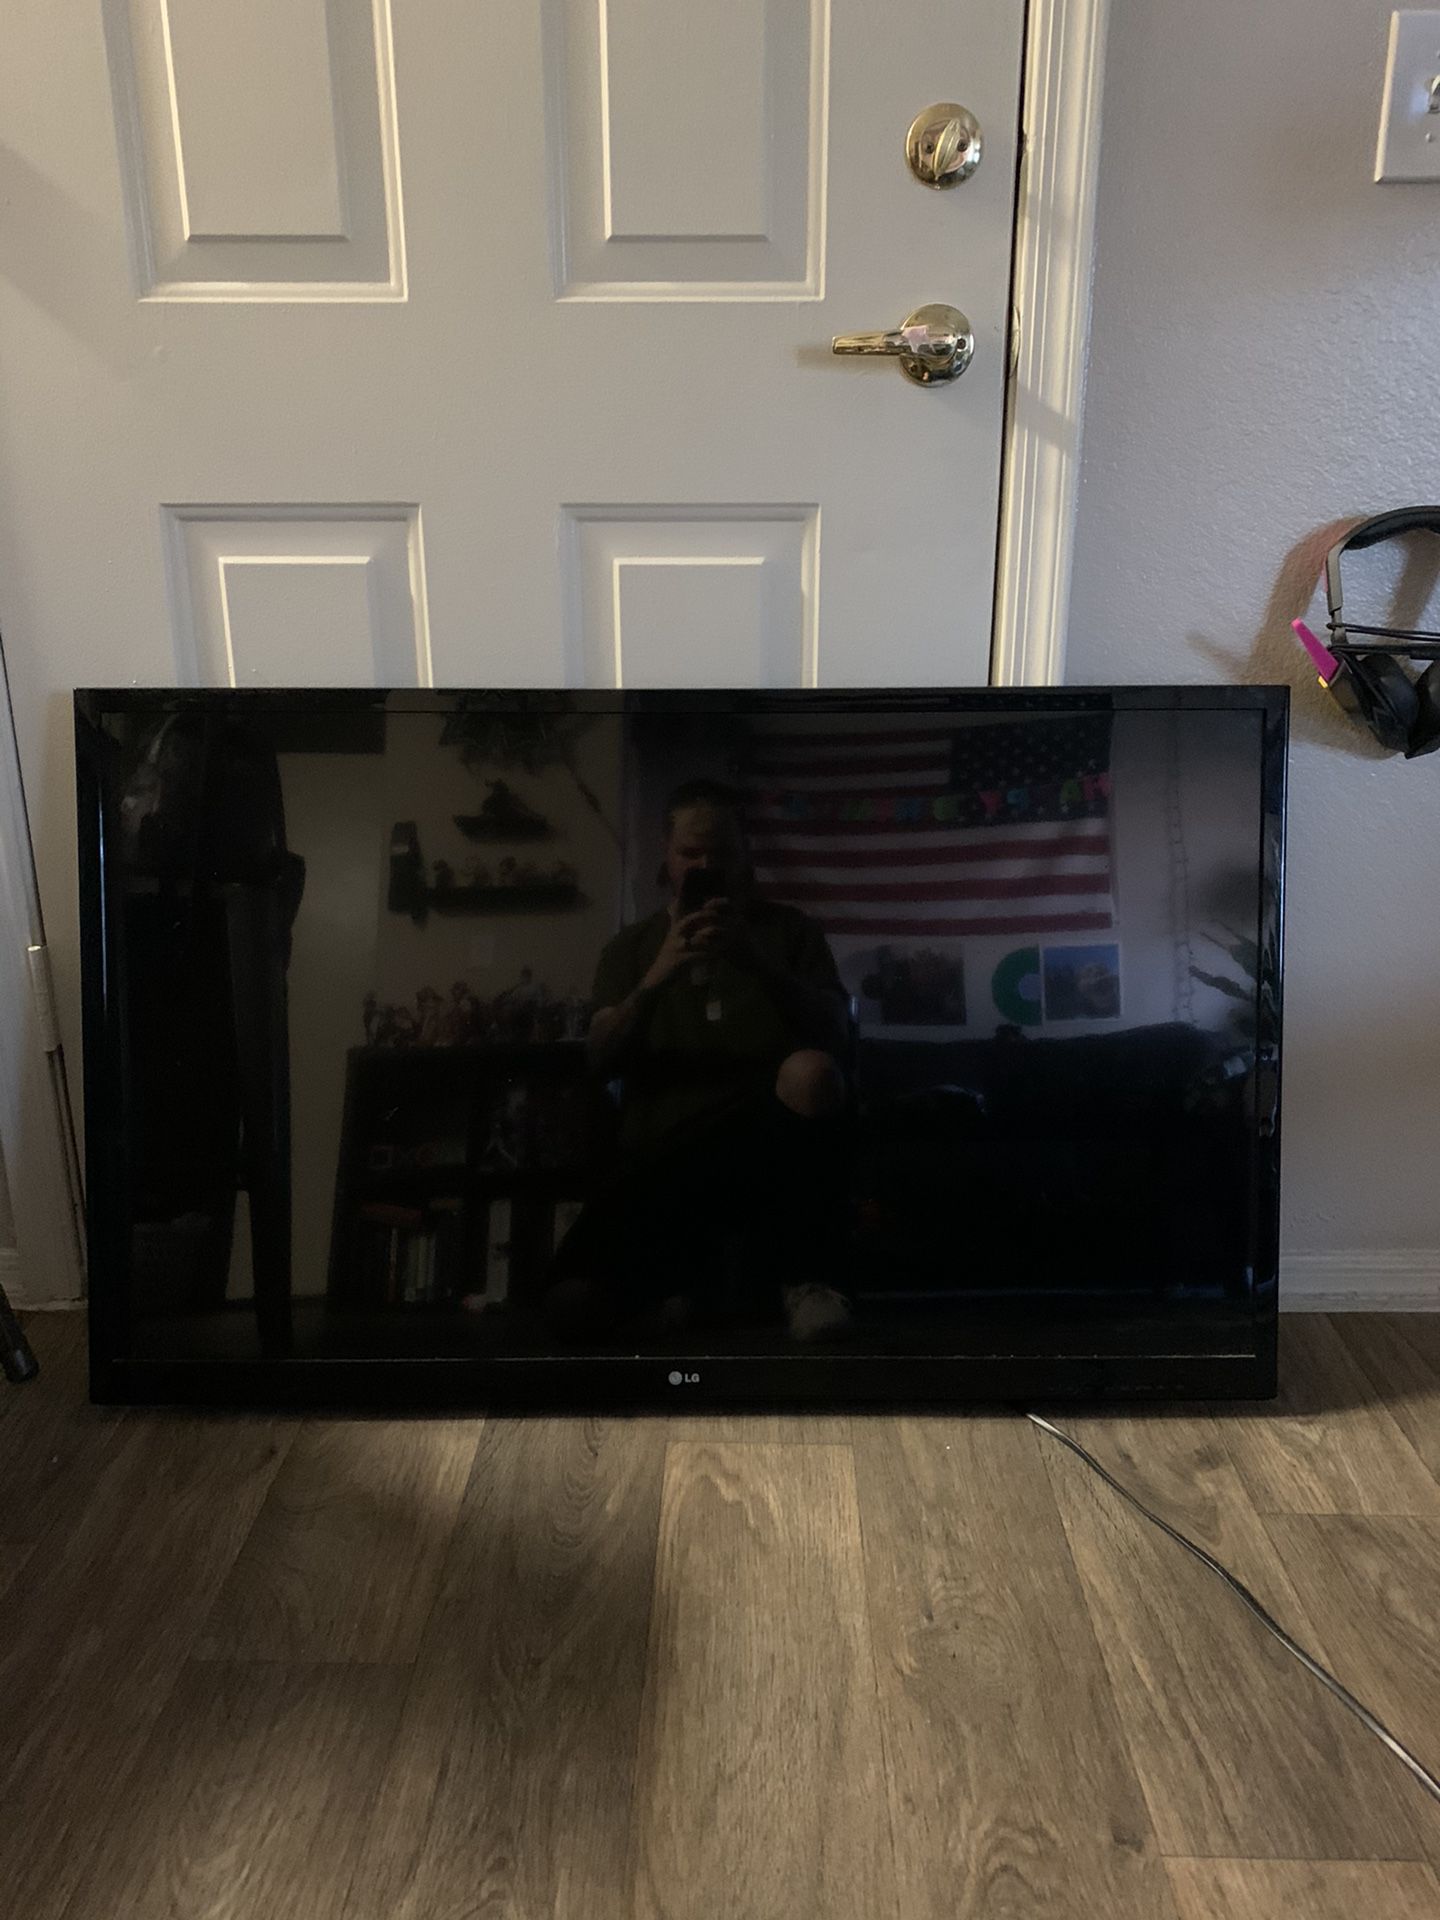 LG 47” LED 3D TV